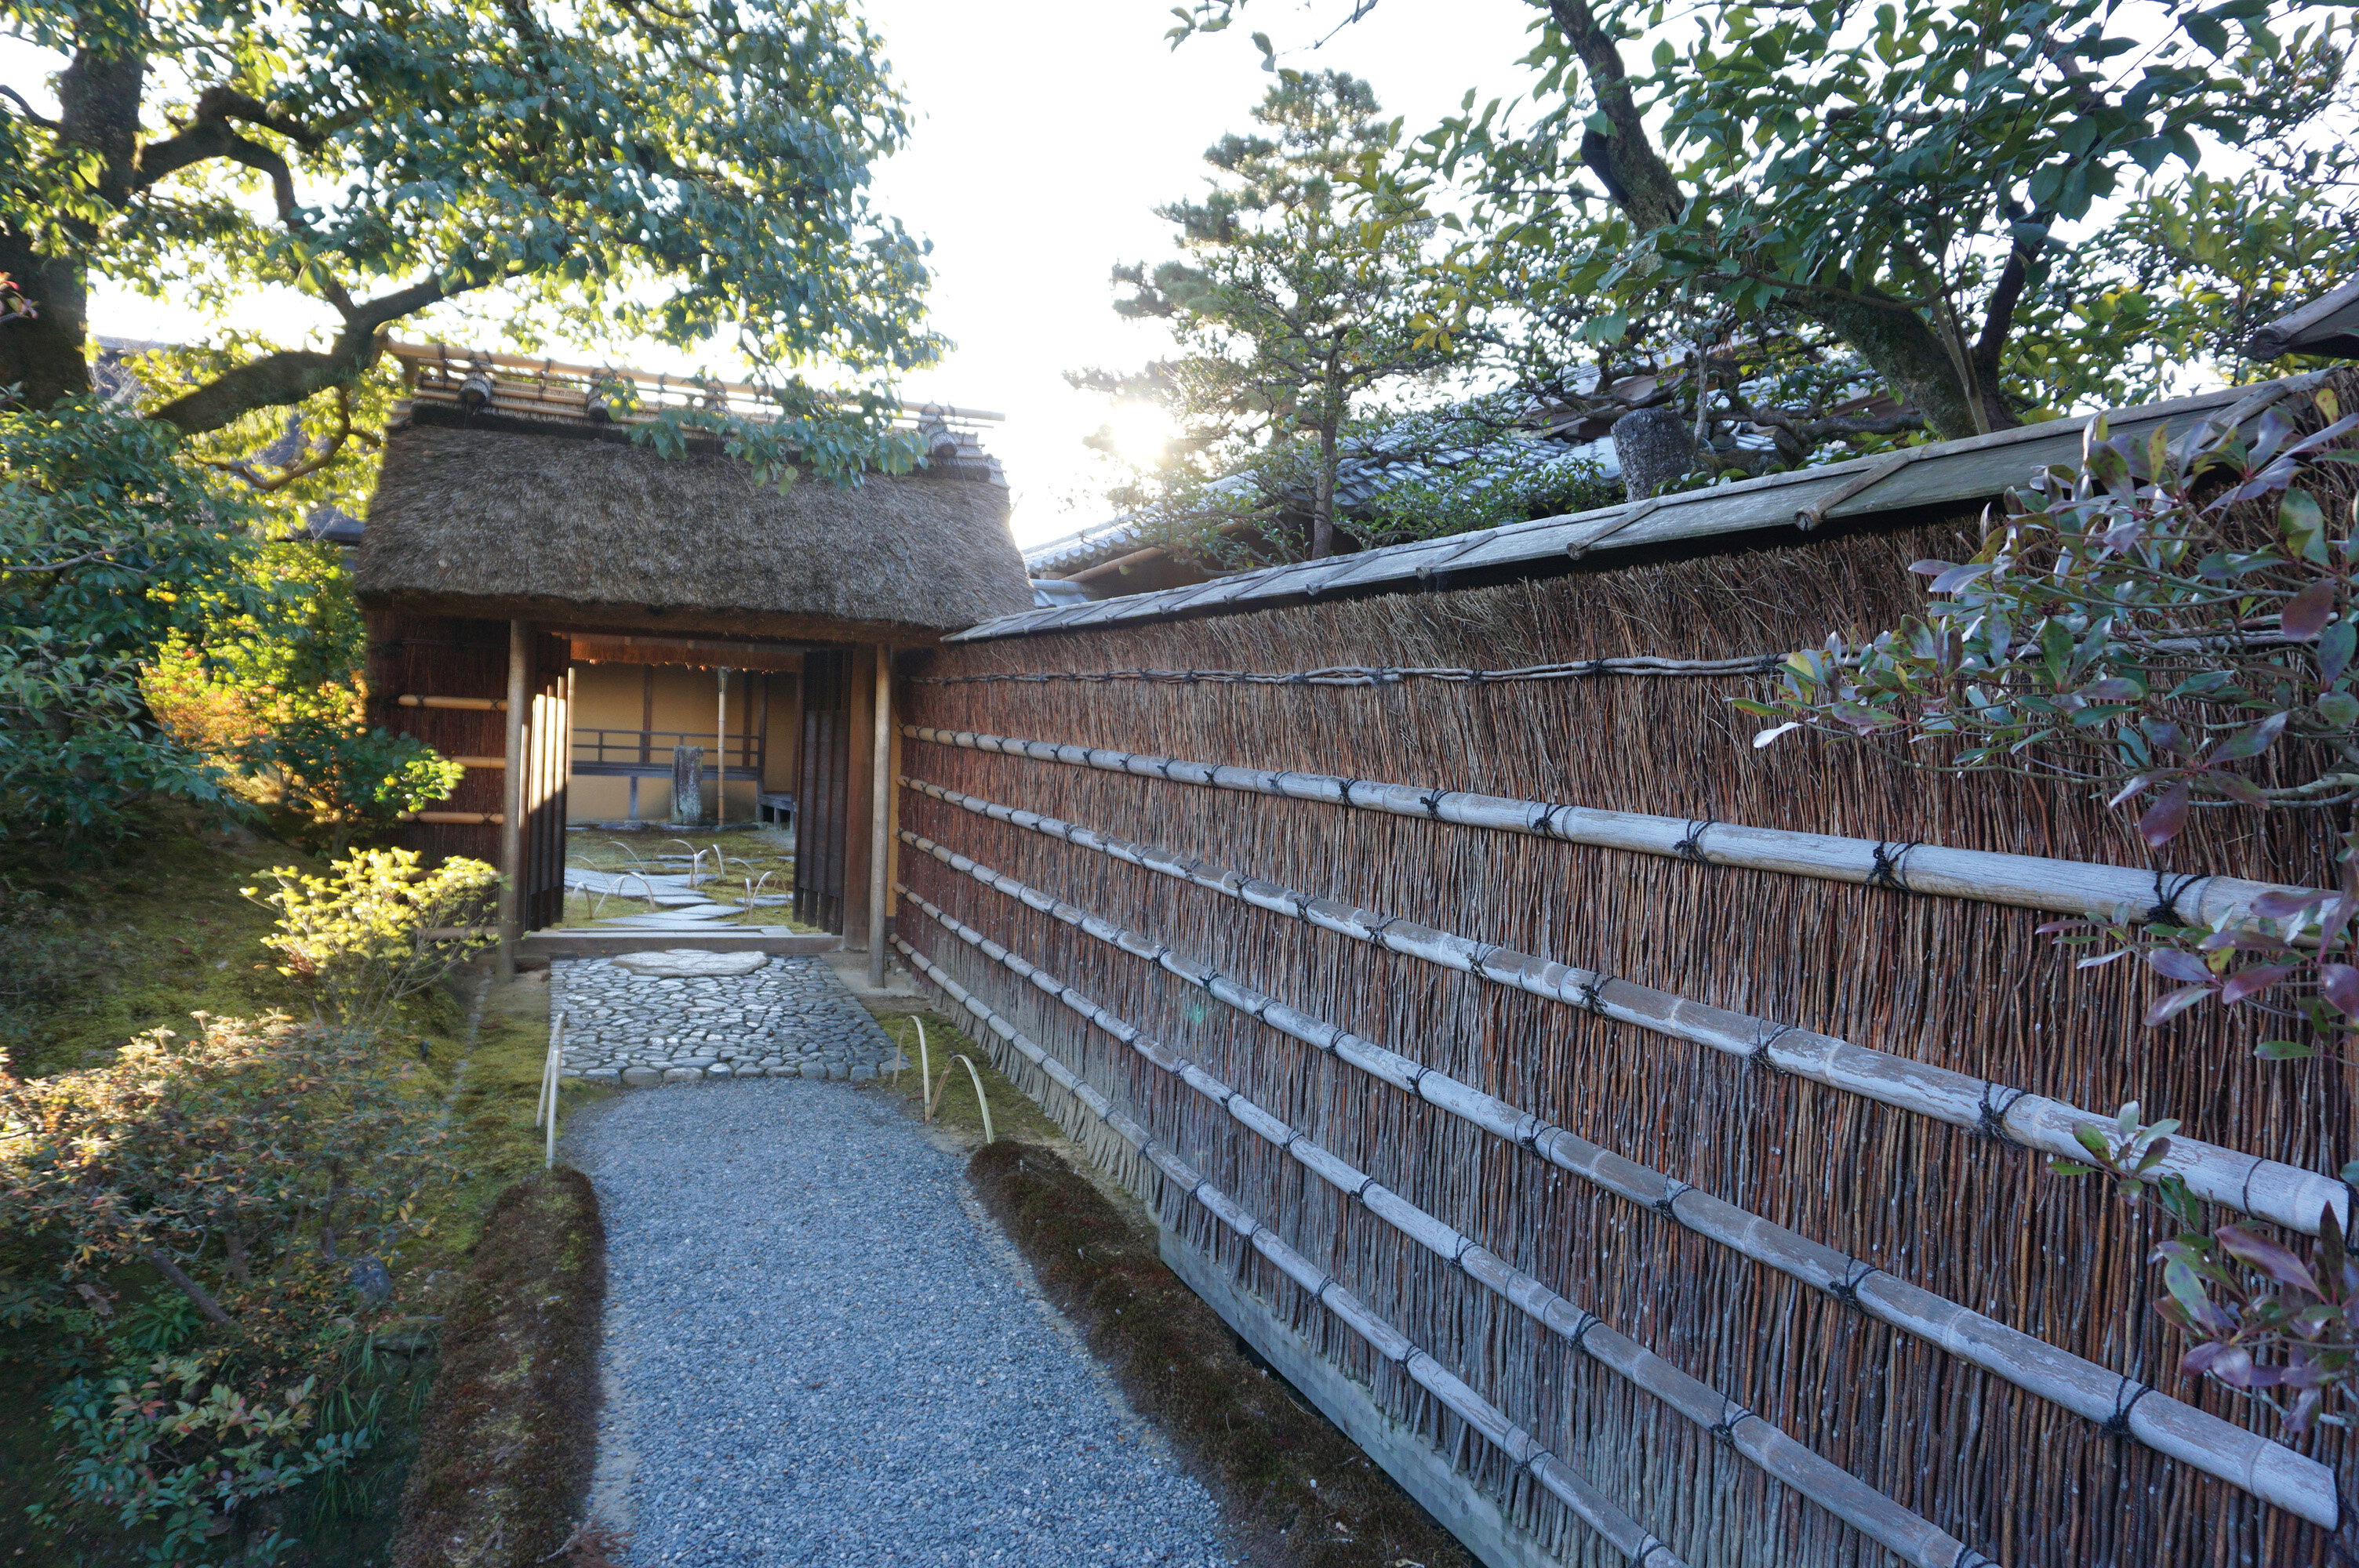 京都クロモジ文化の再発見、「絞り染め」と邪気を払う「垣根」 一覧画像